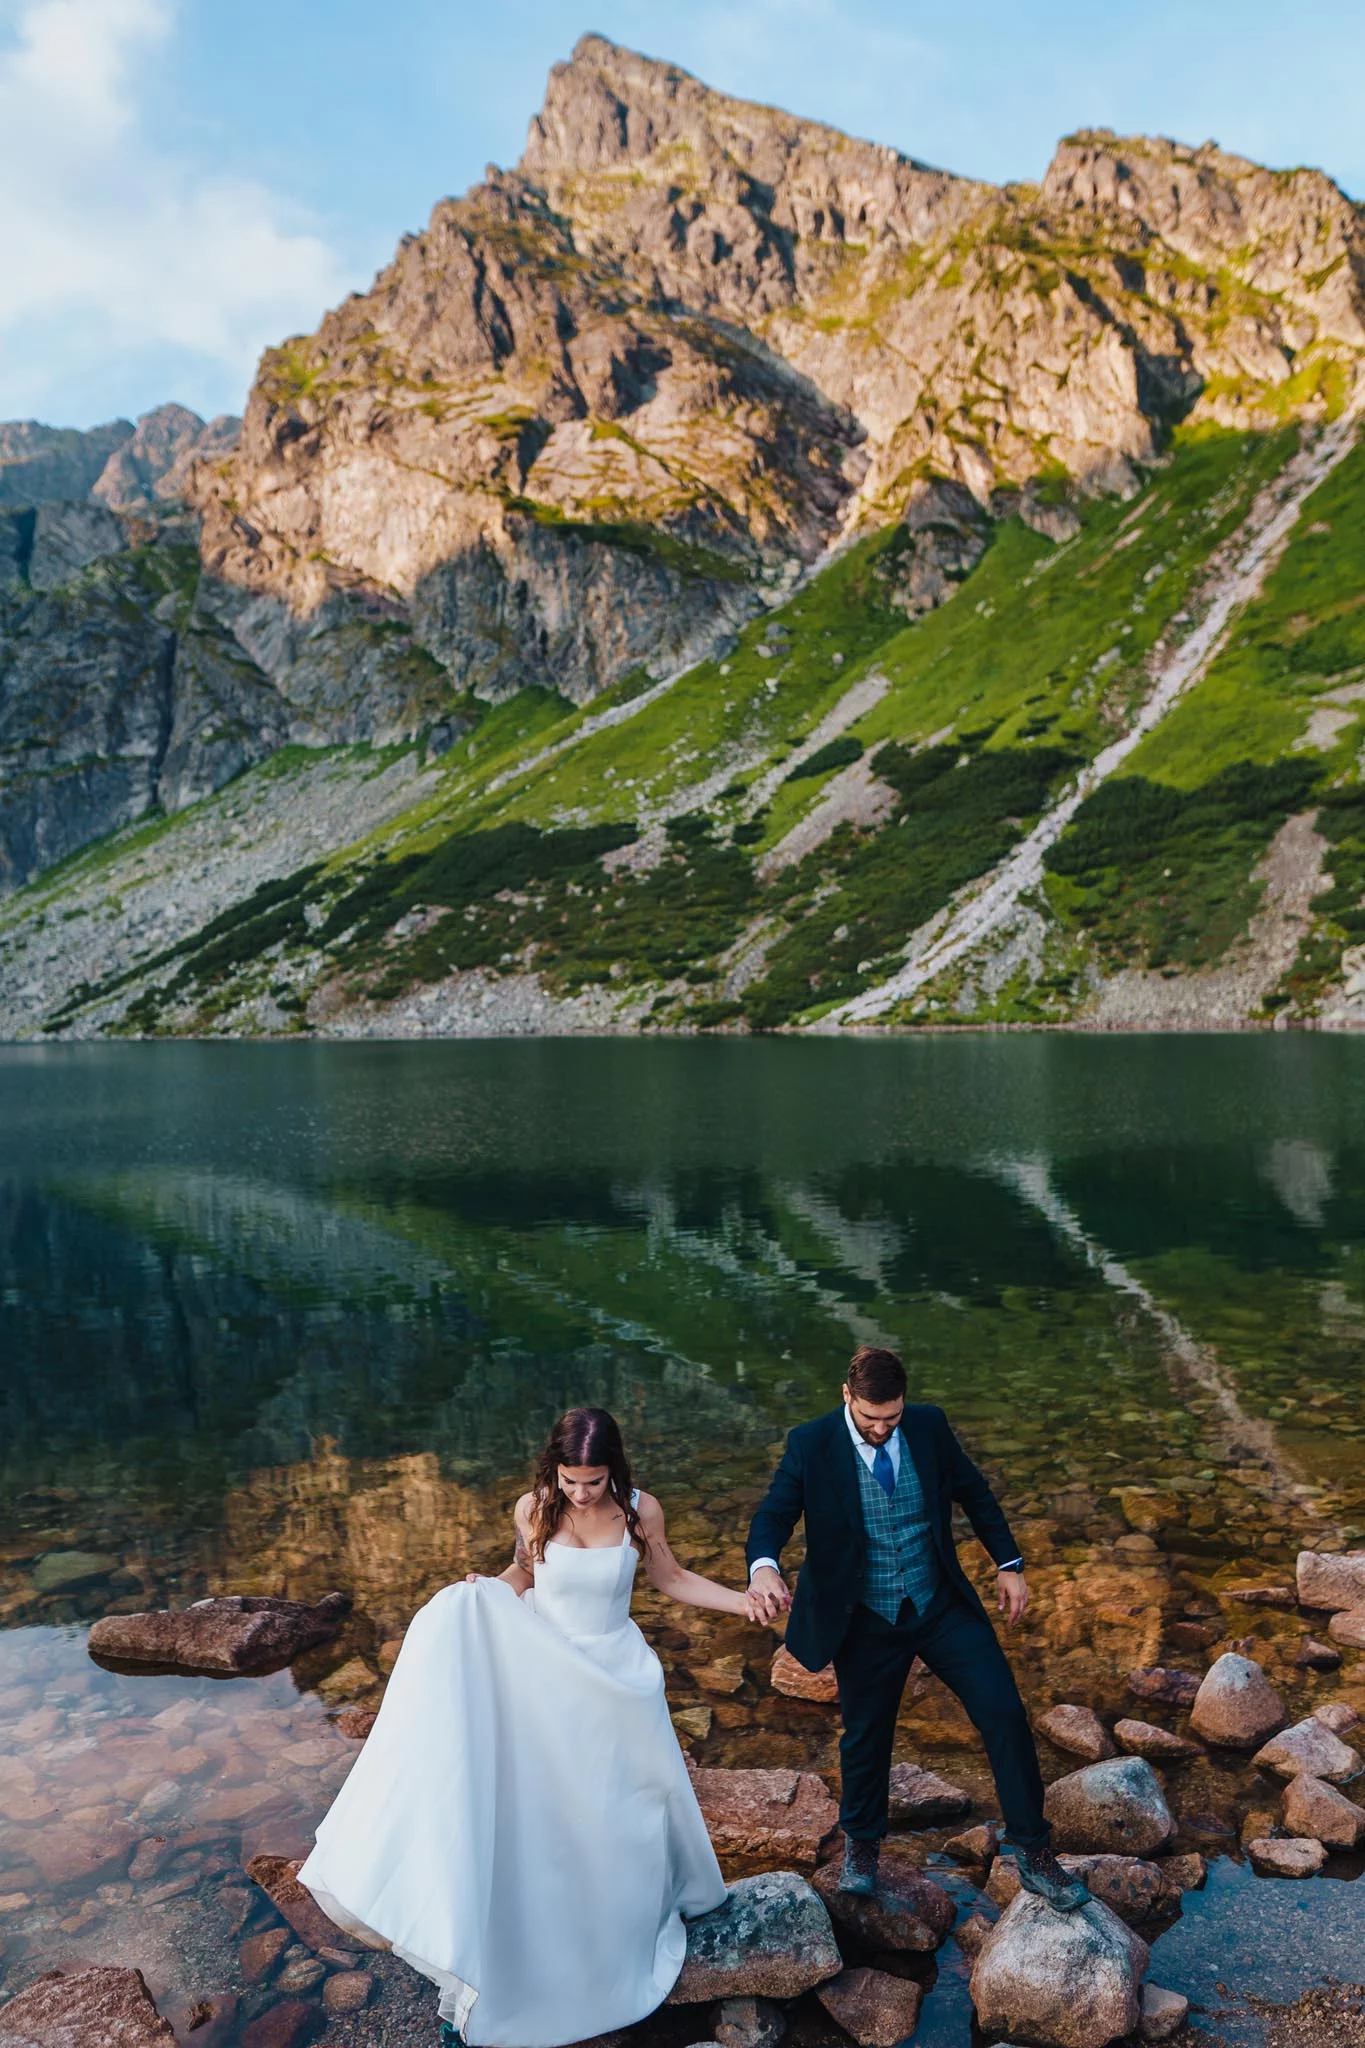 Sesja ślubna w Tatrach nad Czarnym Stawem Gąsienicowym